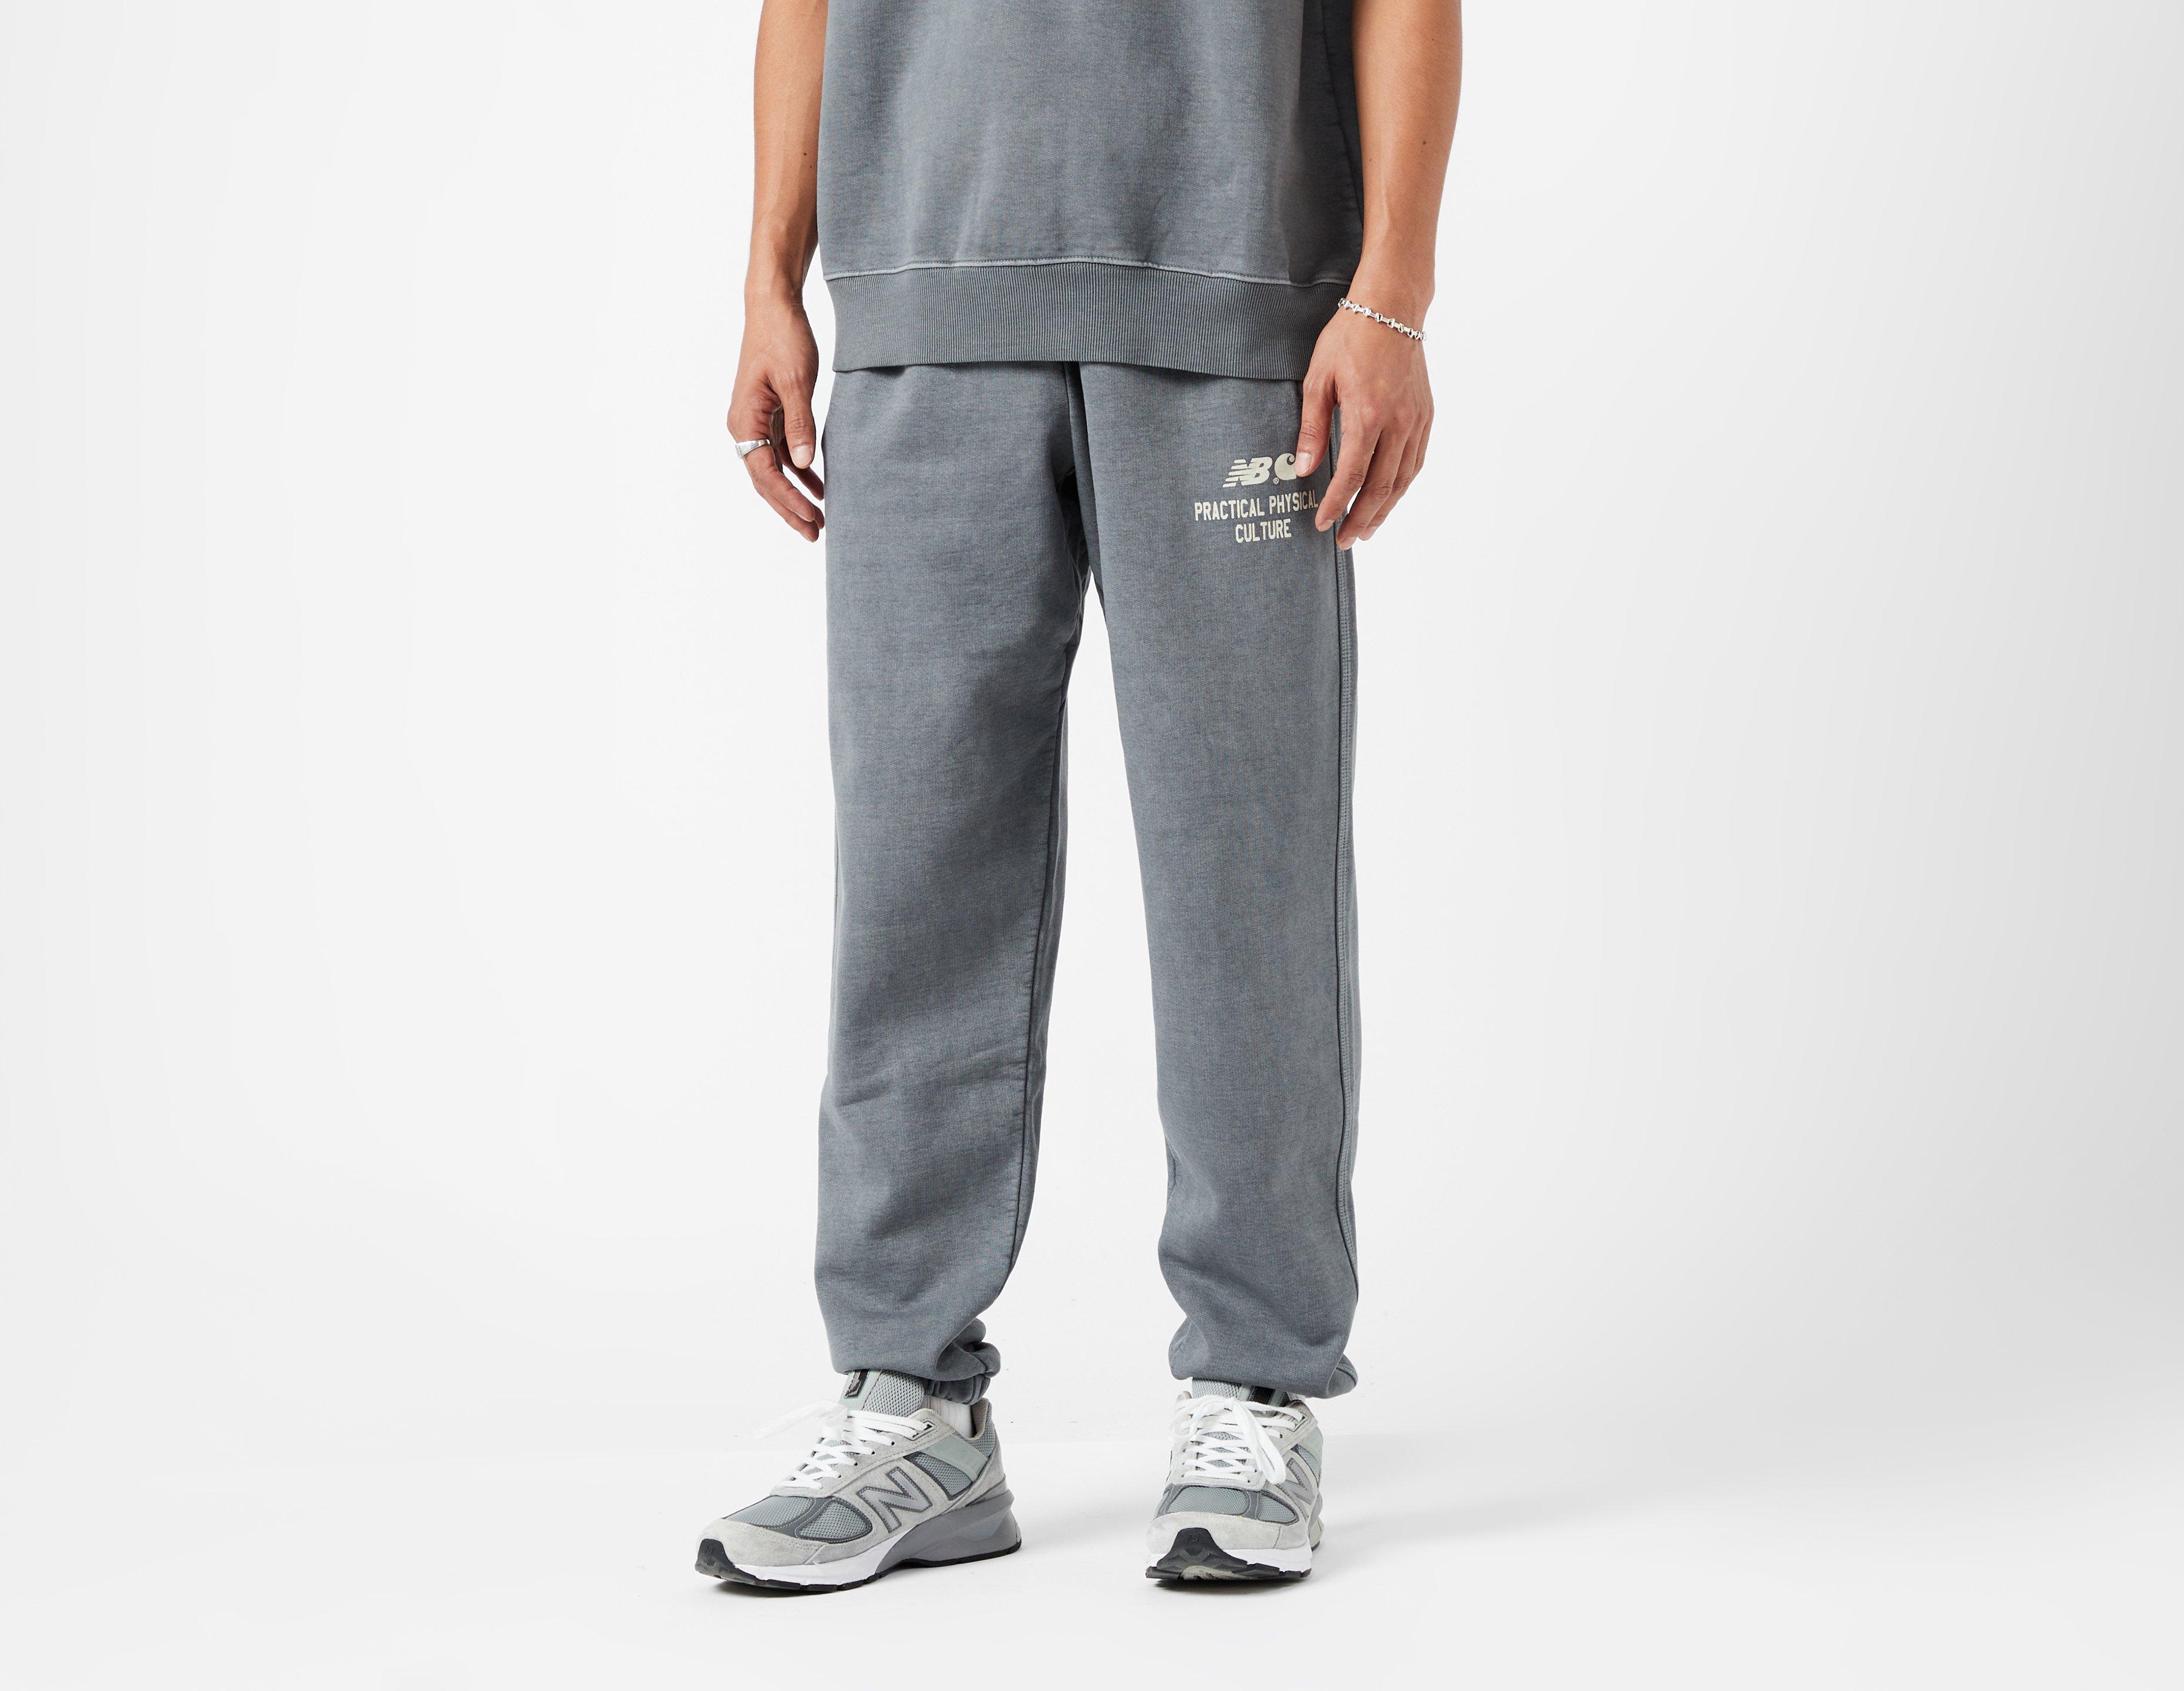 Grey Carhartt WIP x New Balance Sculpture Sweat Pants | zapatillas de running New Balance constitución fuerte talla 32 | Alumix-dz?